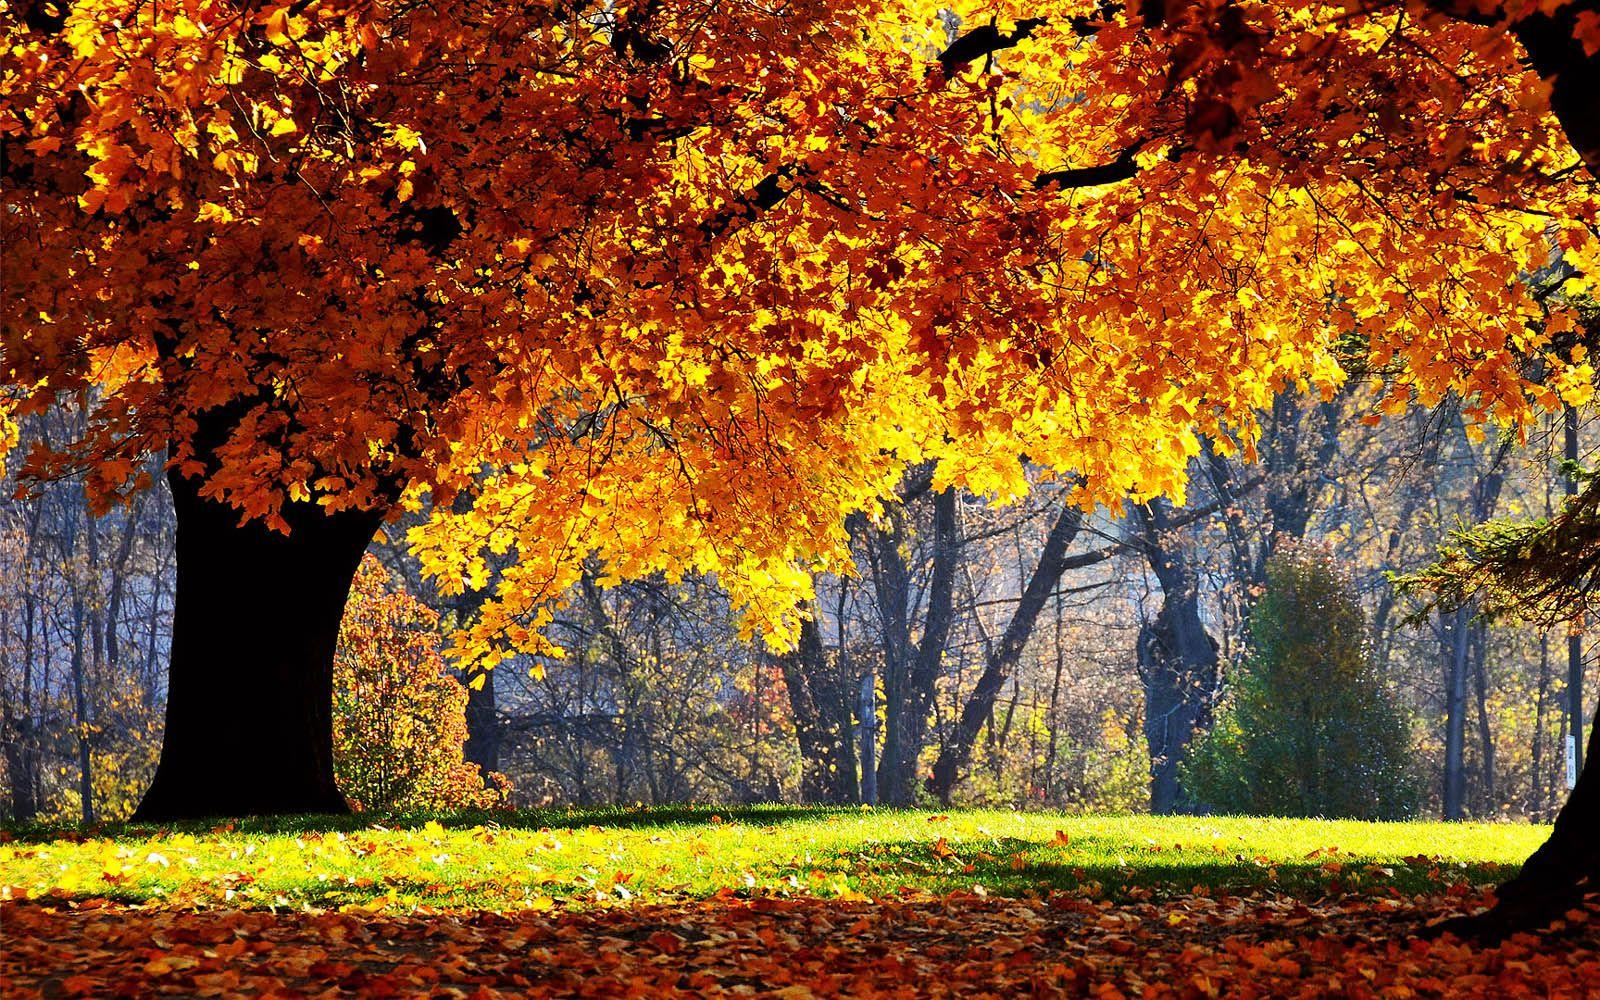 Scenic Autumn Desktop Wallpapers - Top Free Scenic Autumn Desktop ...